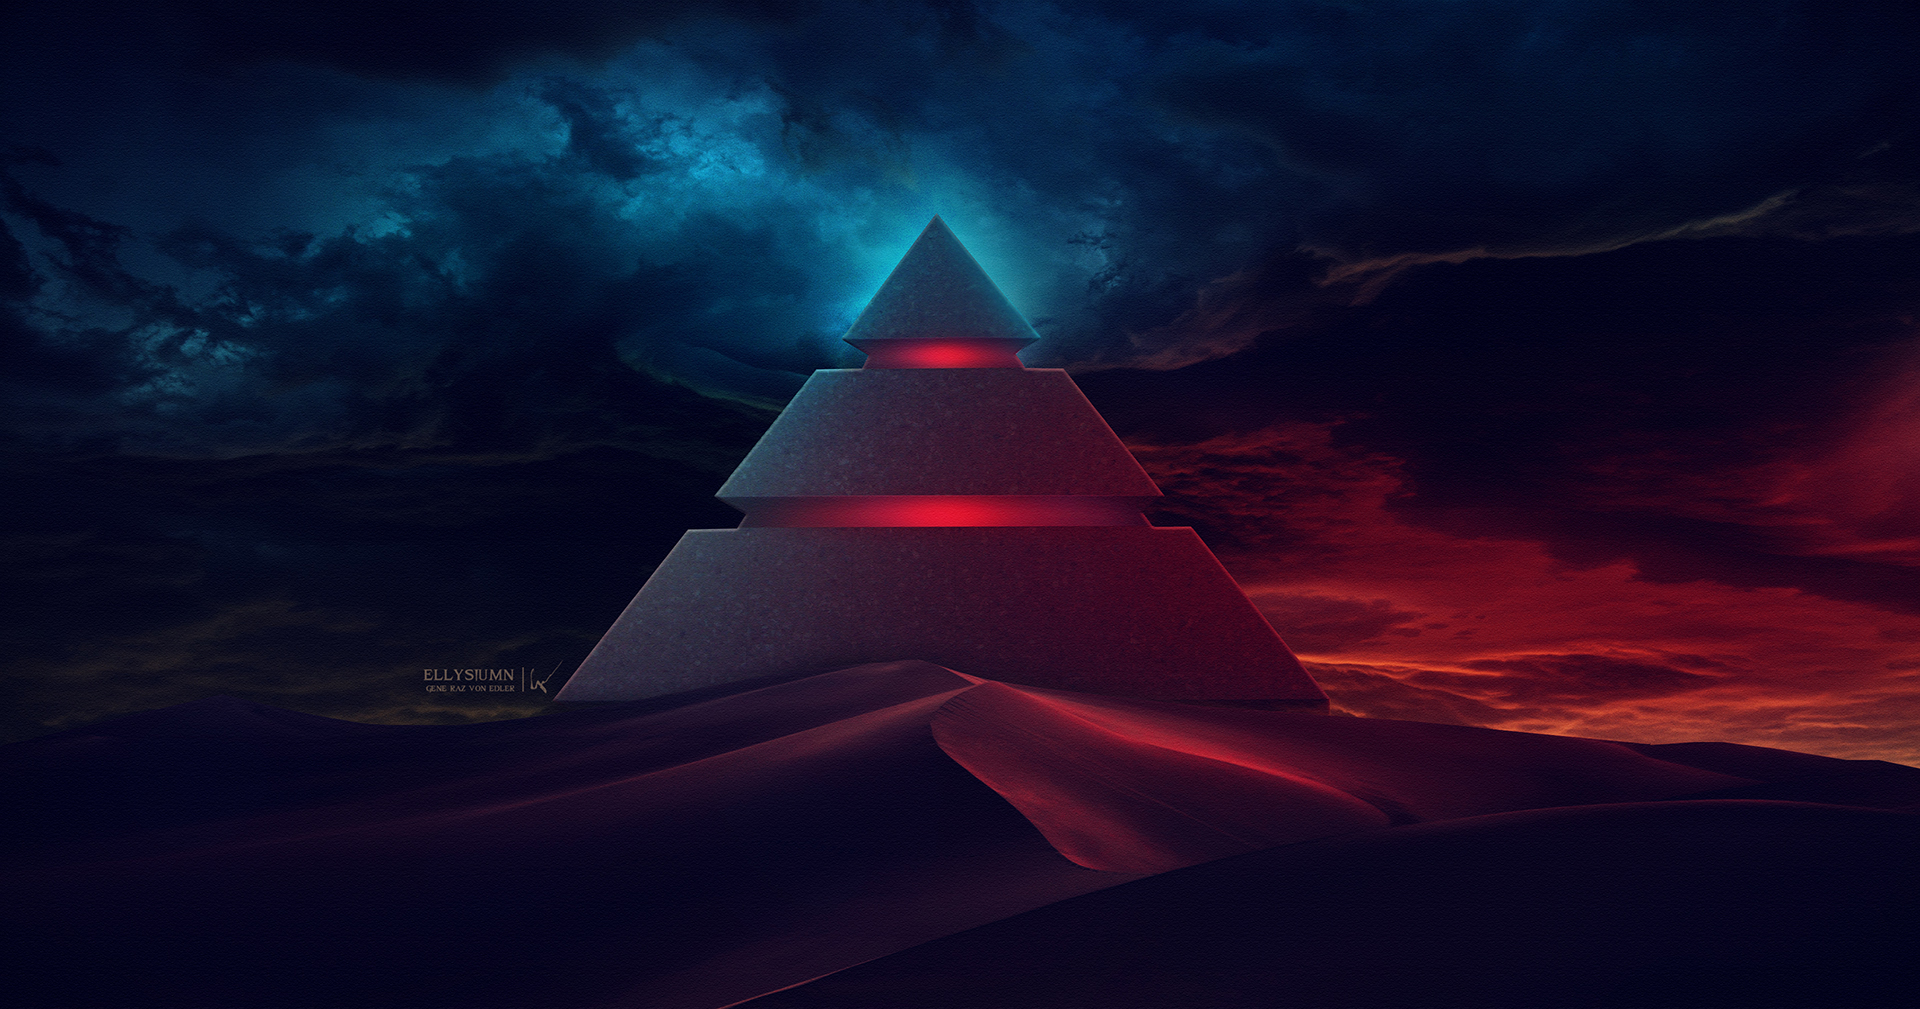 General 1920x1009 Ellysiumn pyramid digital art sky dark red blue black artwork DeviantArt